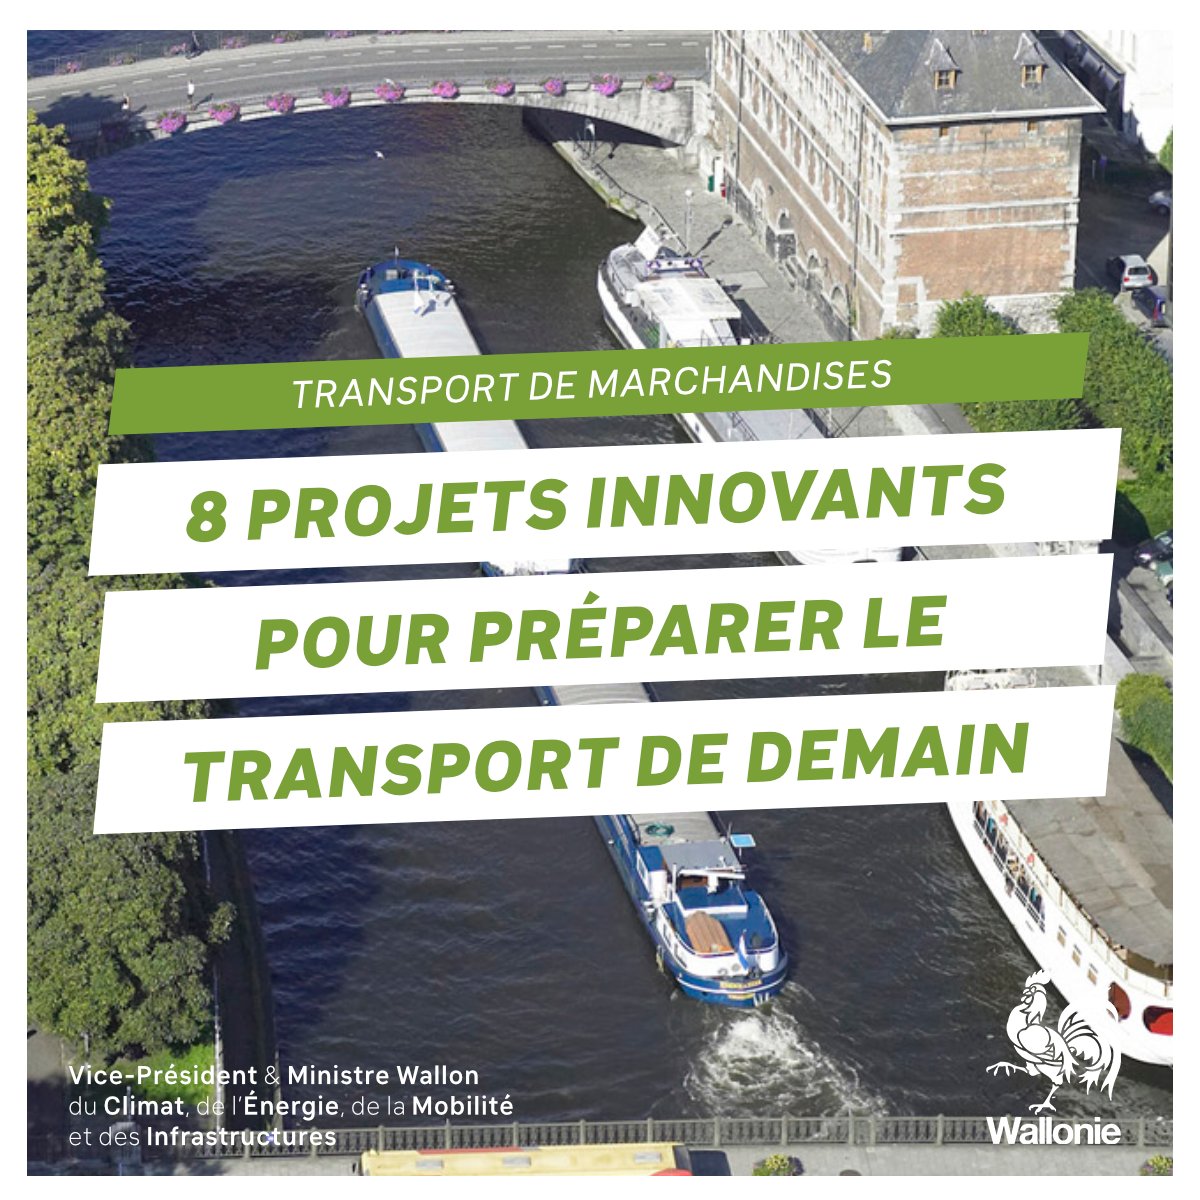 🚛 La Wallonie investit dans l'avenir du transport de marchandises avec 8 projets innovants ! Soutenues à hauteur de 422 000 euros, ces initiatives visent à réduire de 35% les émissions de gaz à effet de serre d'ici 2030 ! ℹ️ bit.ly/4bbILDN